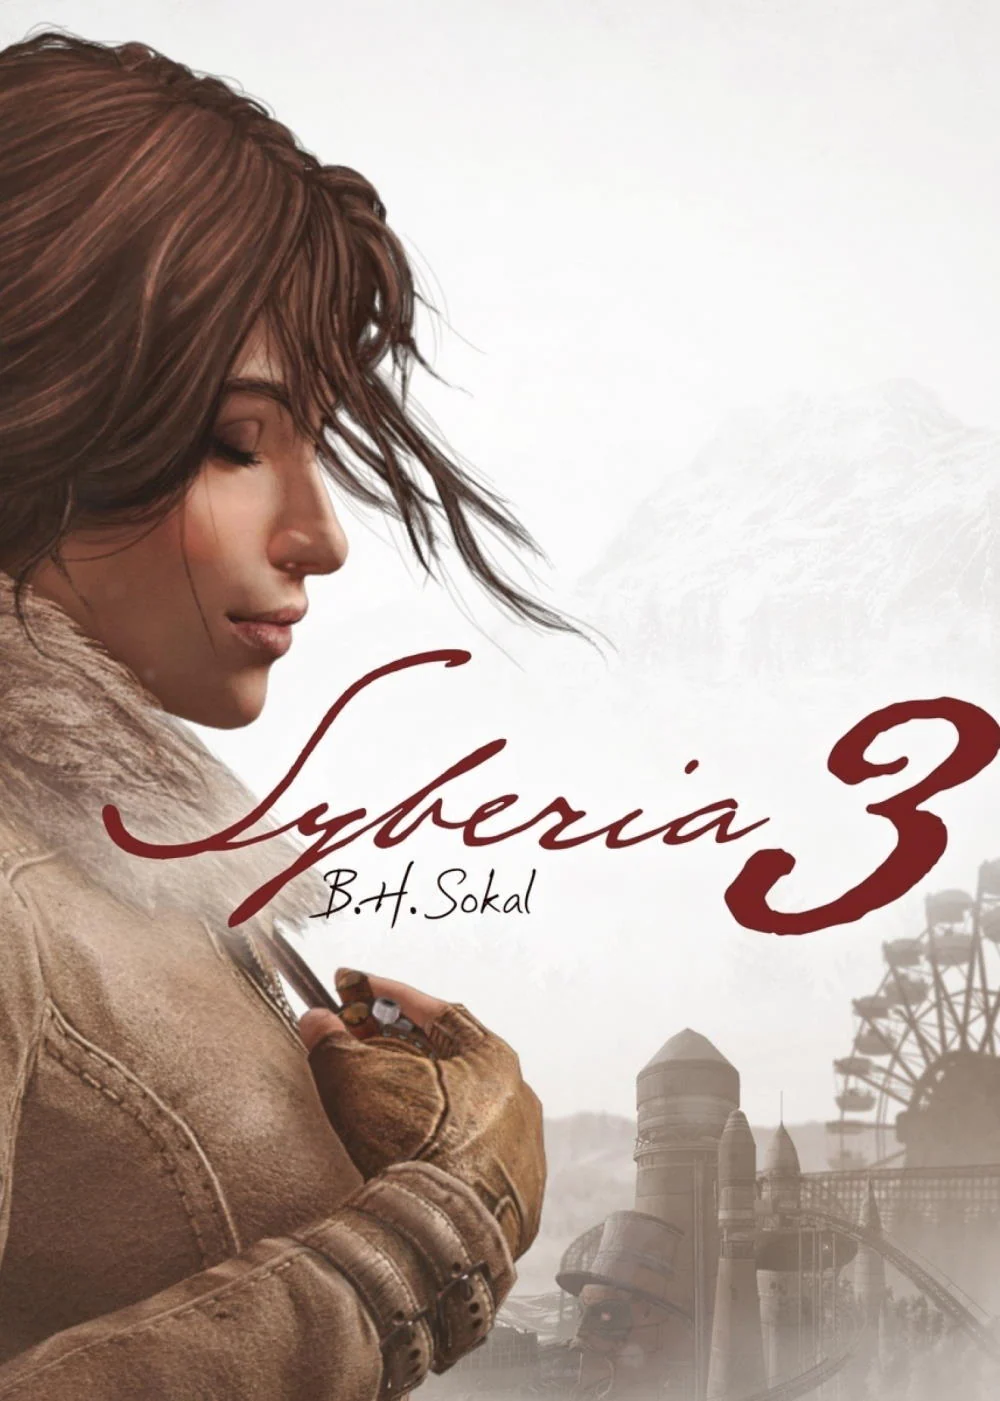 Syberia 3 + DLC (PC/ Mac) - Steam - Digital Code